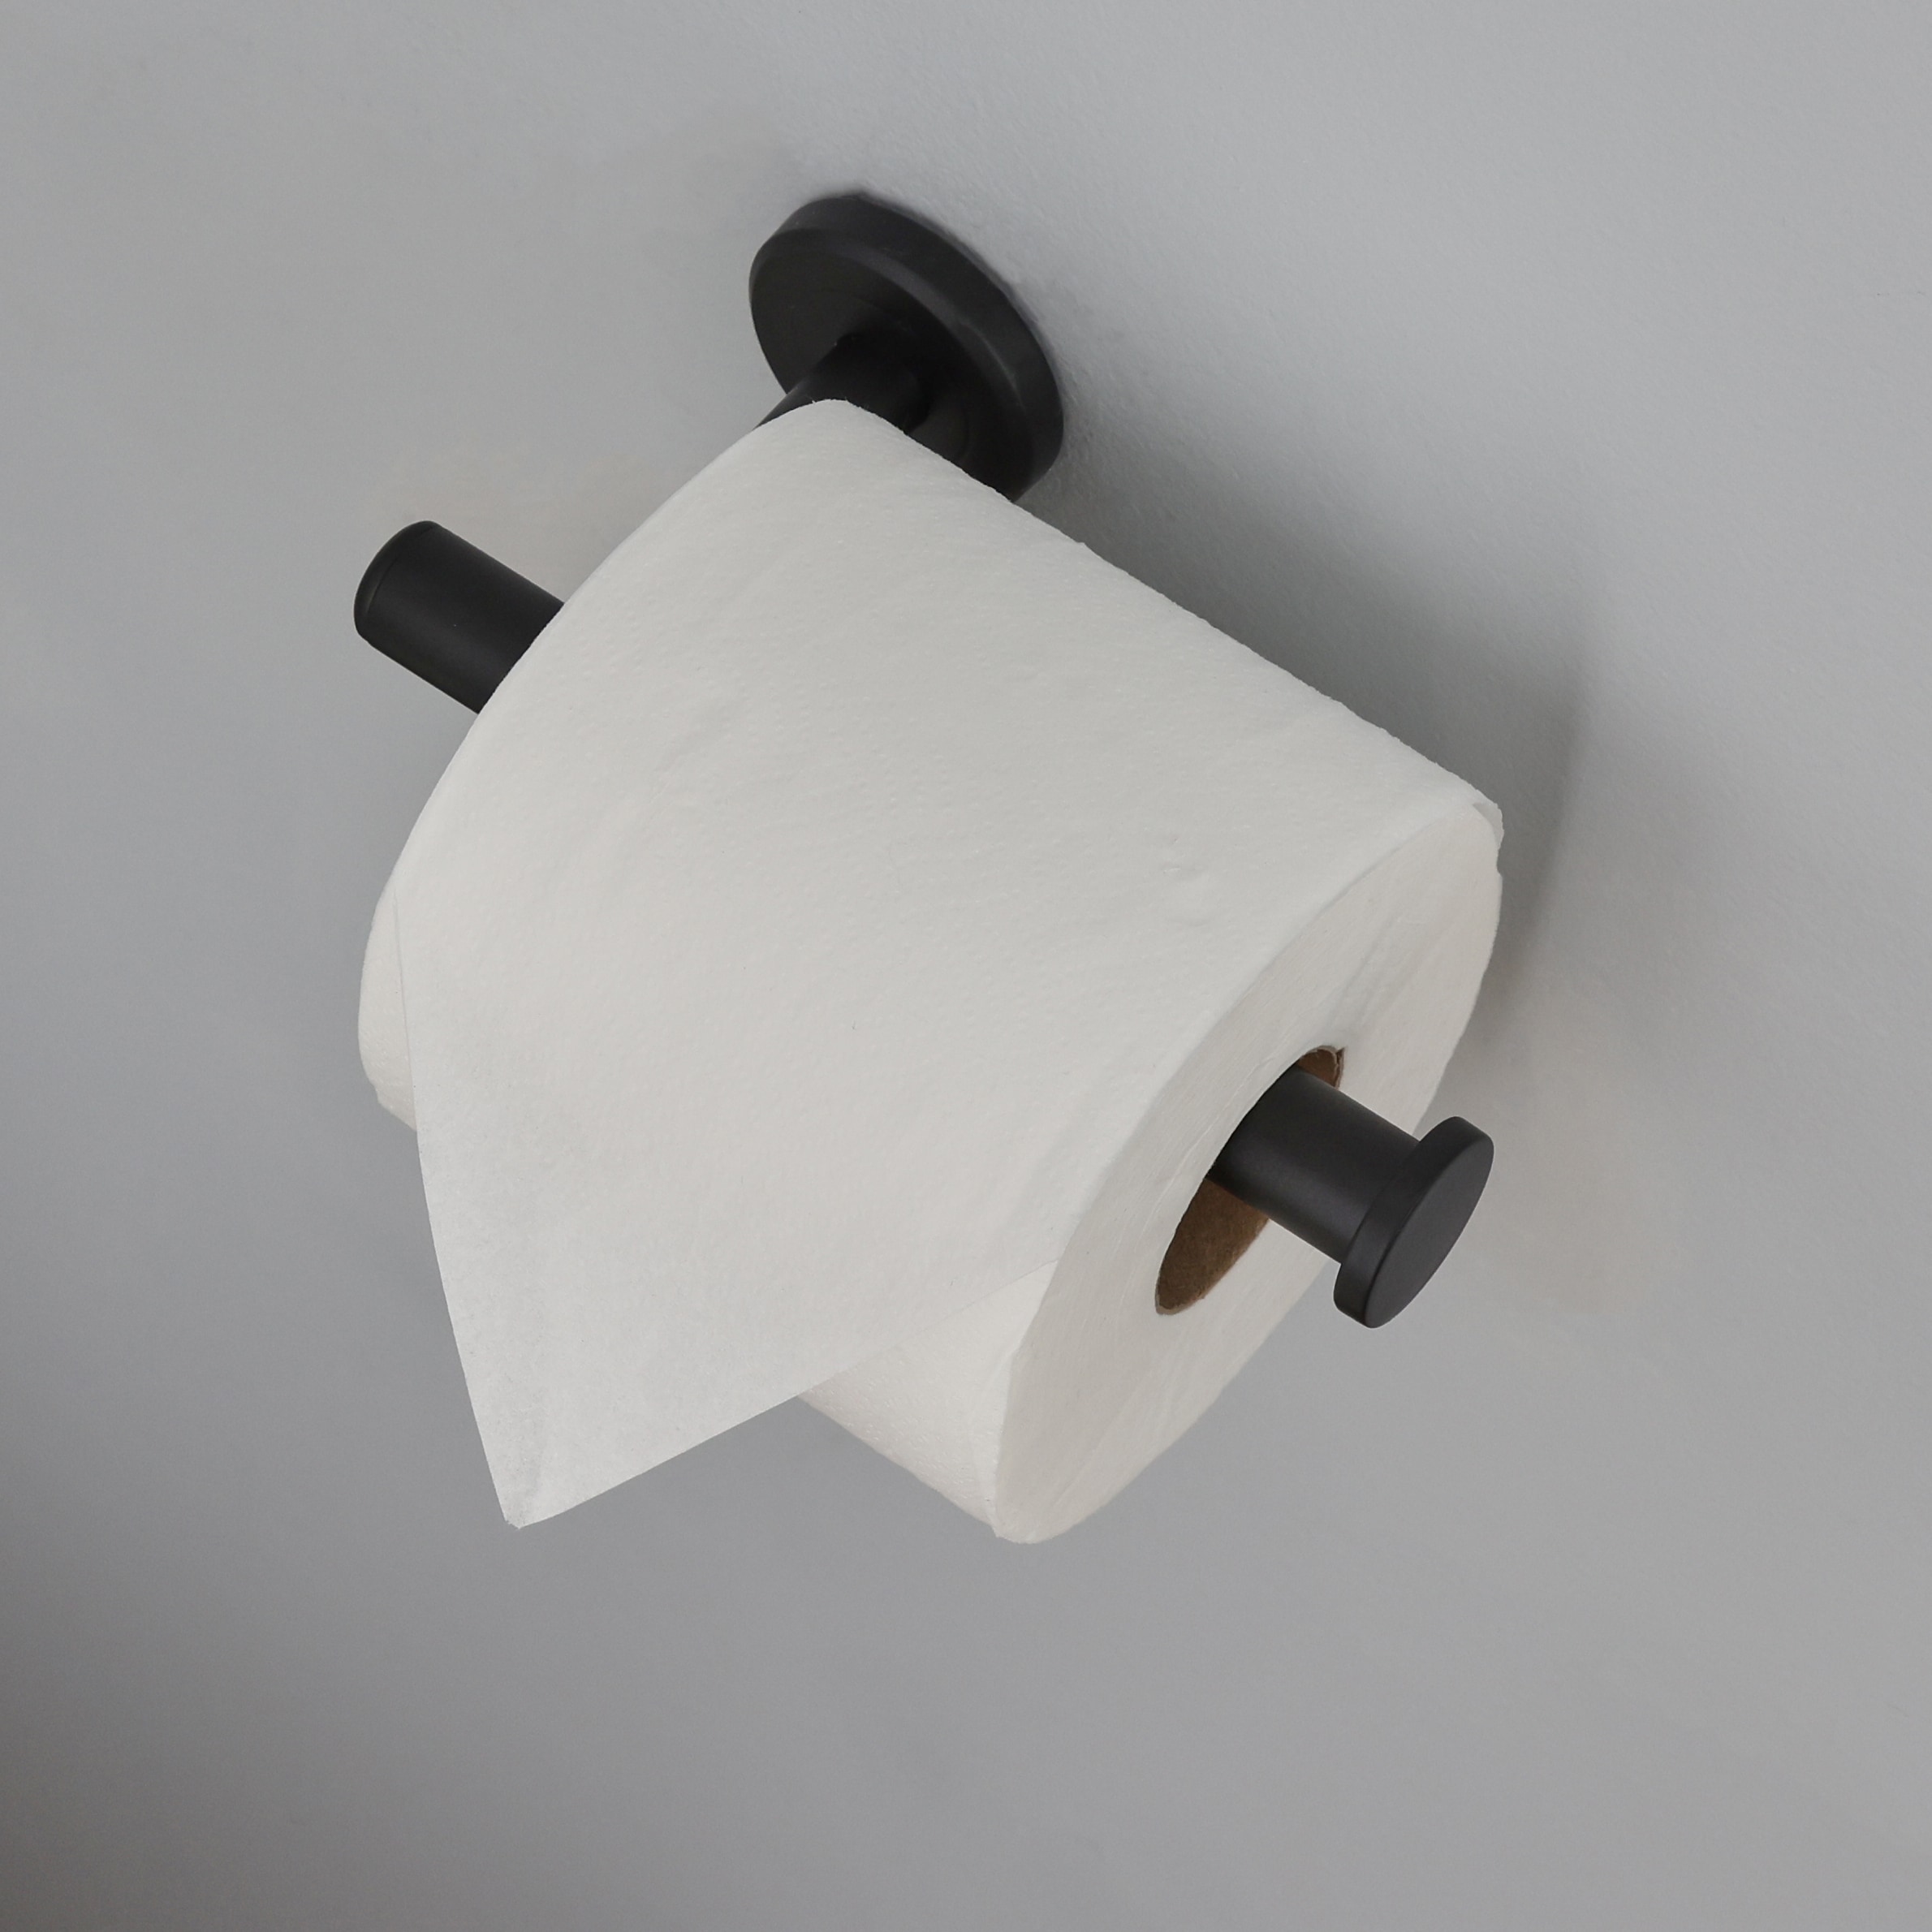 Better Homes & Gardens Wall Mount Toilet Paper Holder, Matte Black